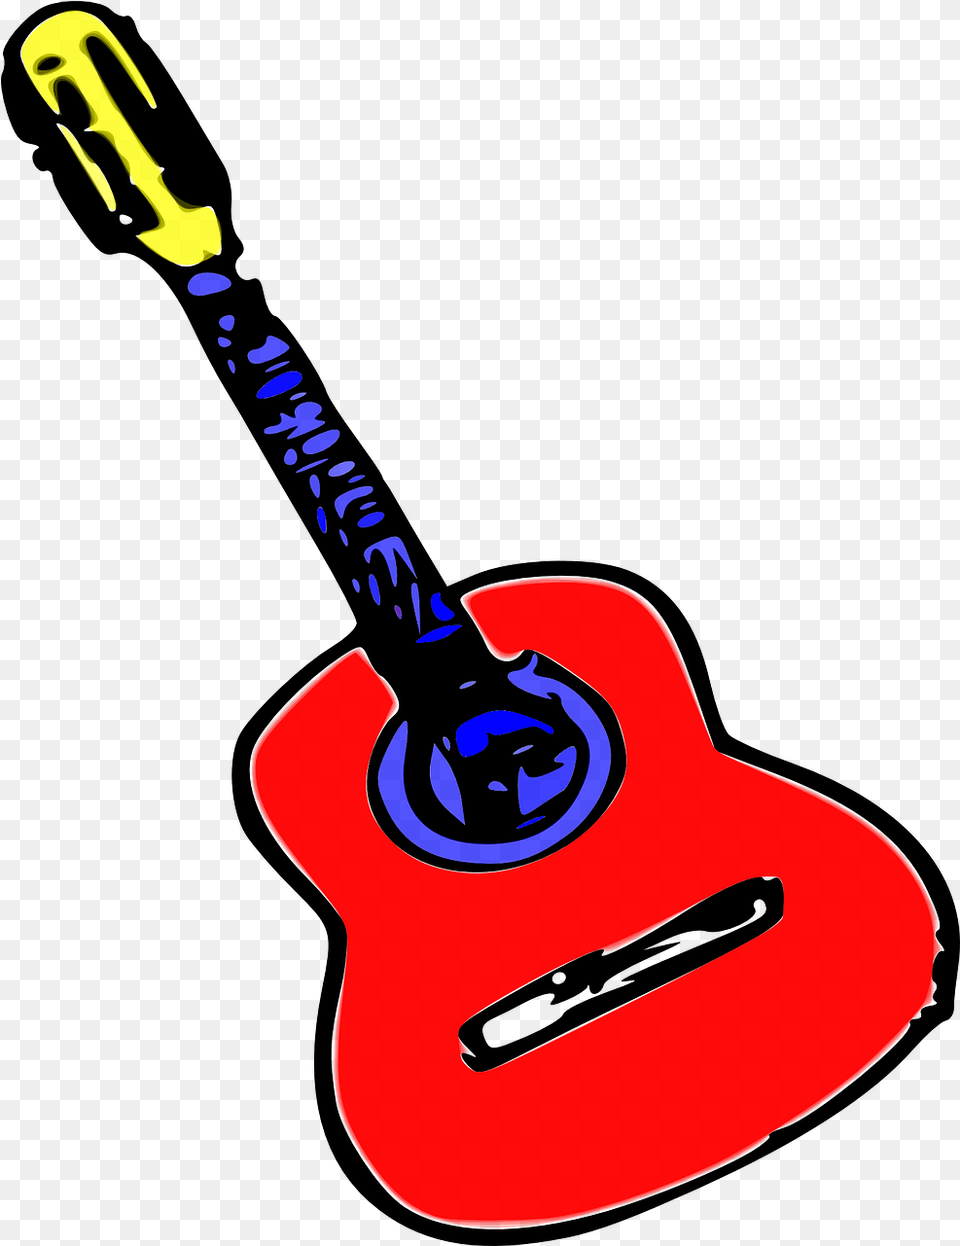 Acoustic Guitar Vector Acoustic Guitar Musical Guitar, Musical Instrument, Smoke Pipe Png